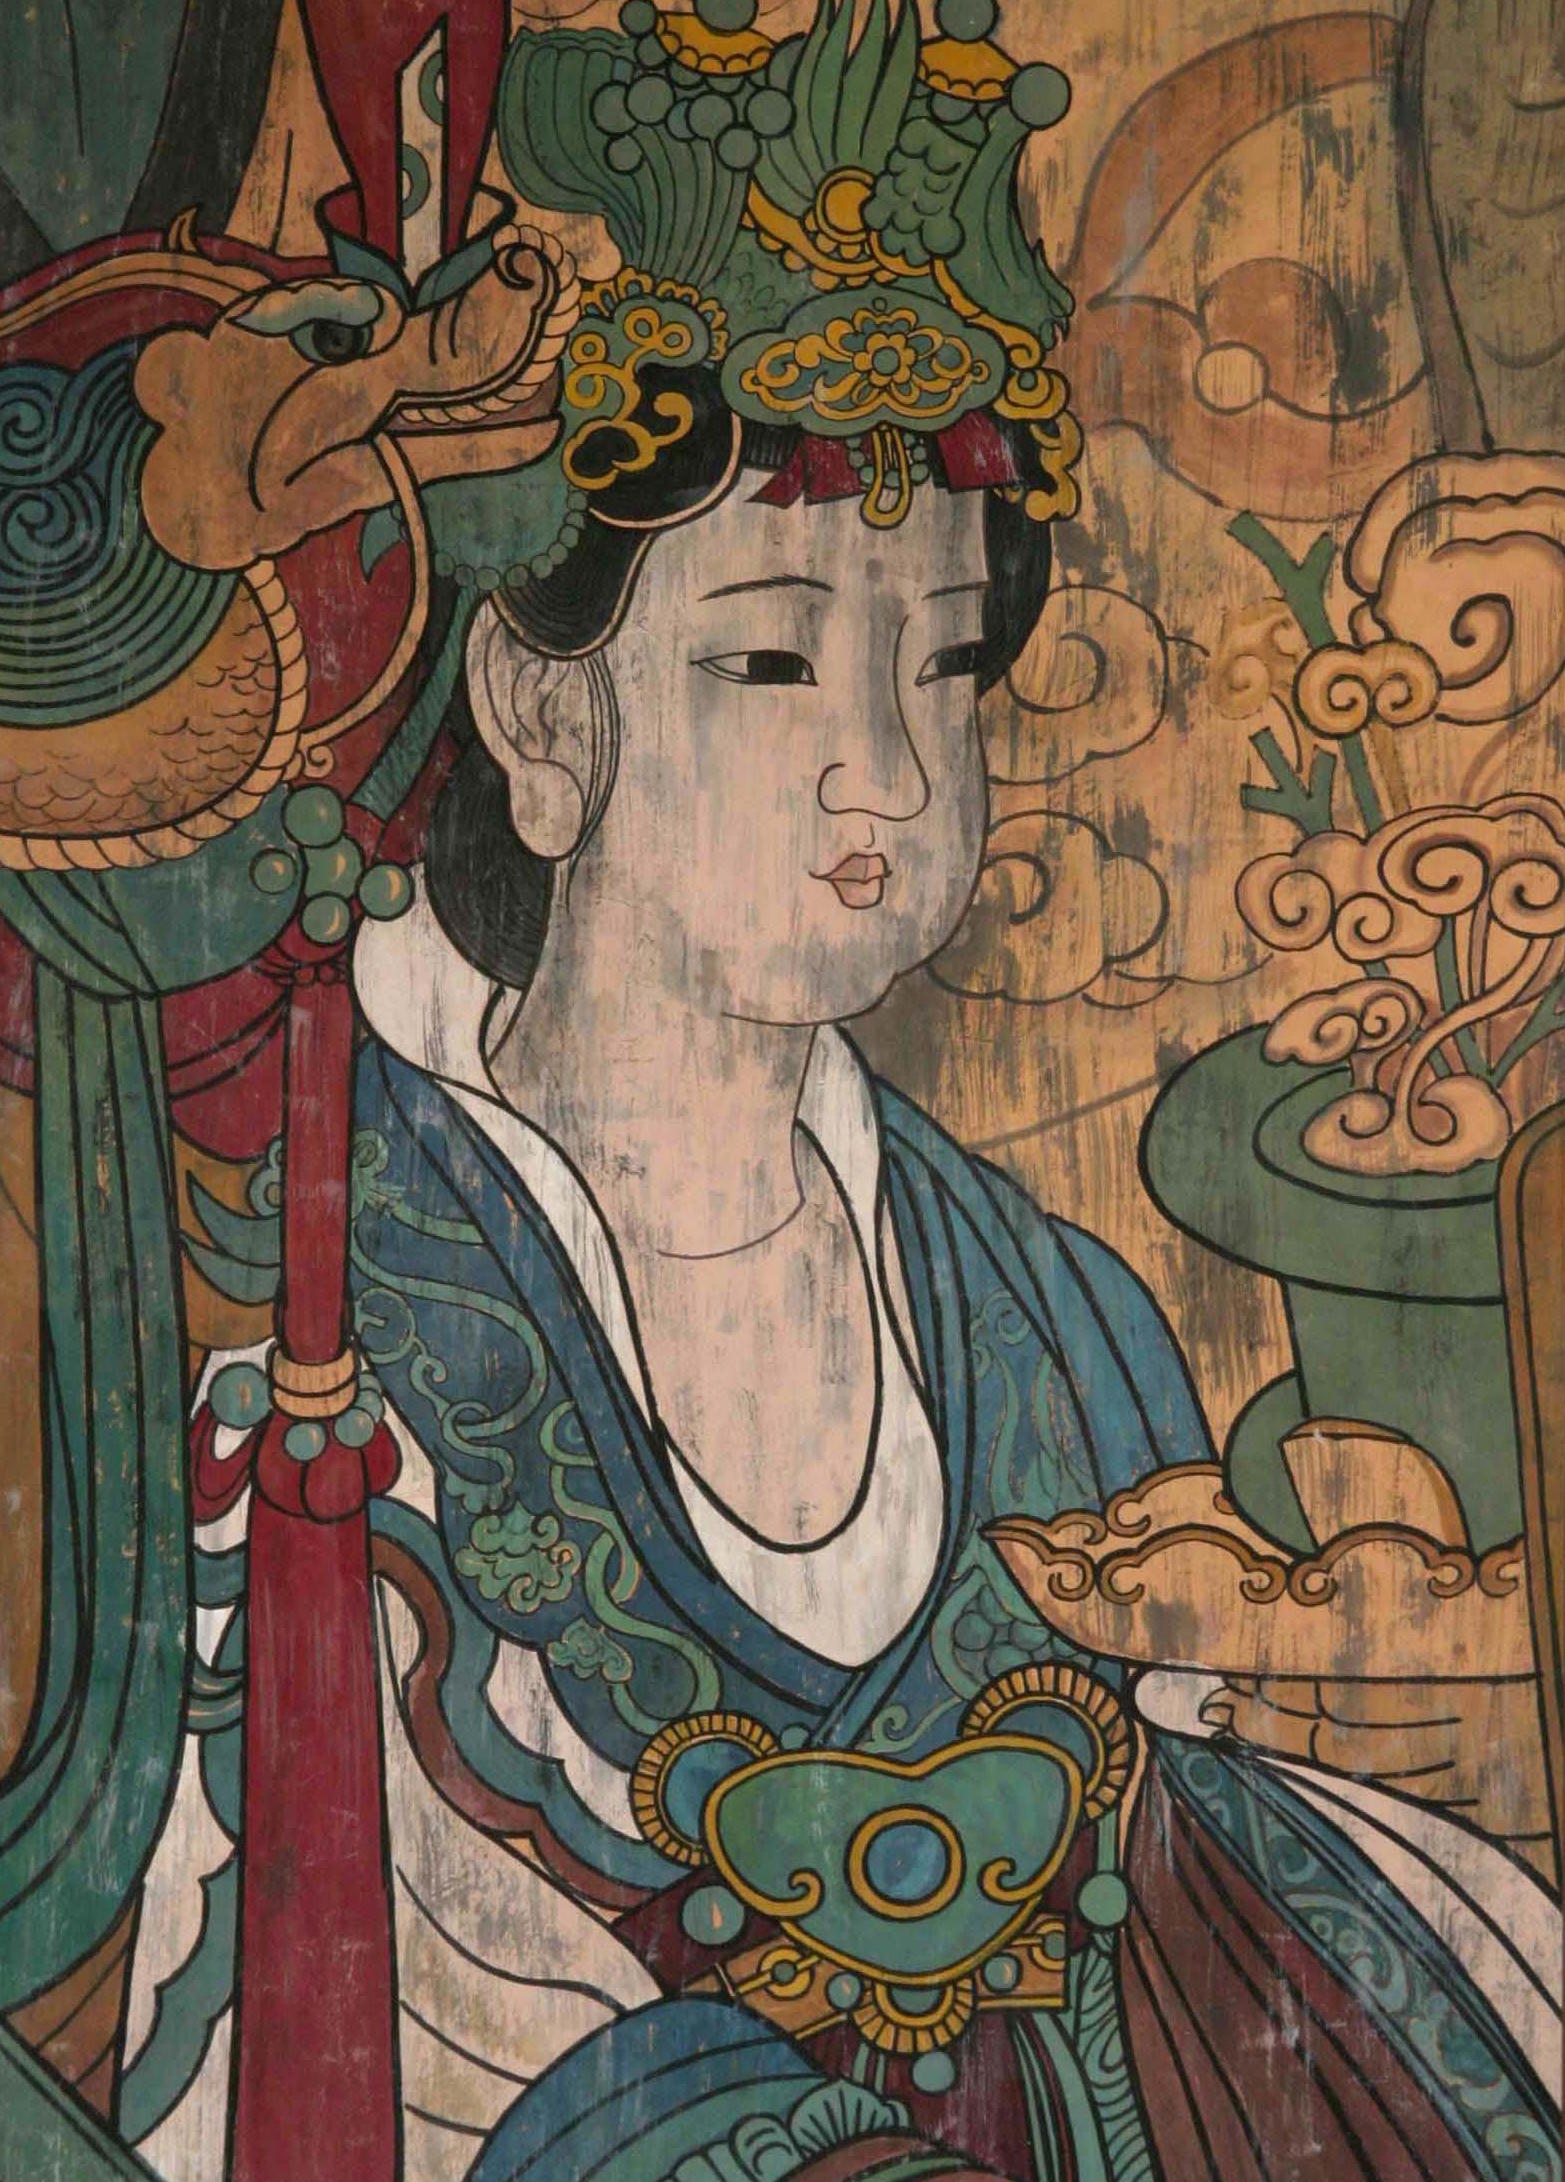 永乐宫壁画是中国壁画的奇葩,世界绘画史上罕见巨